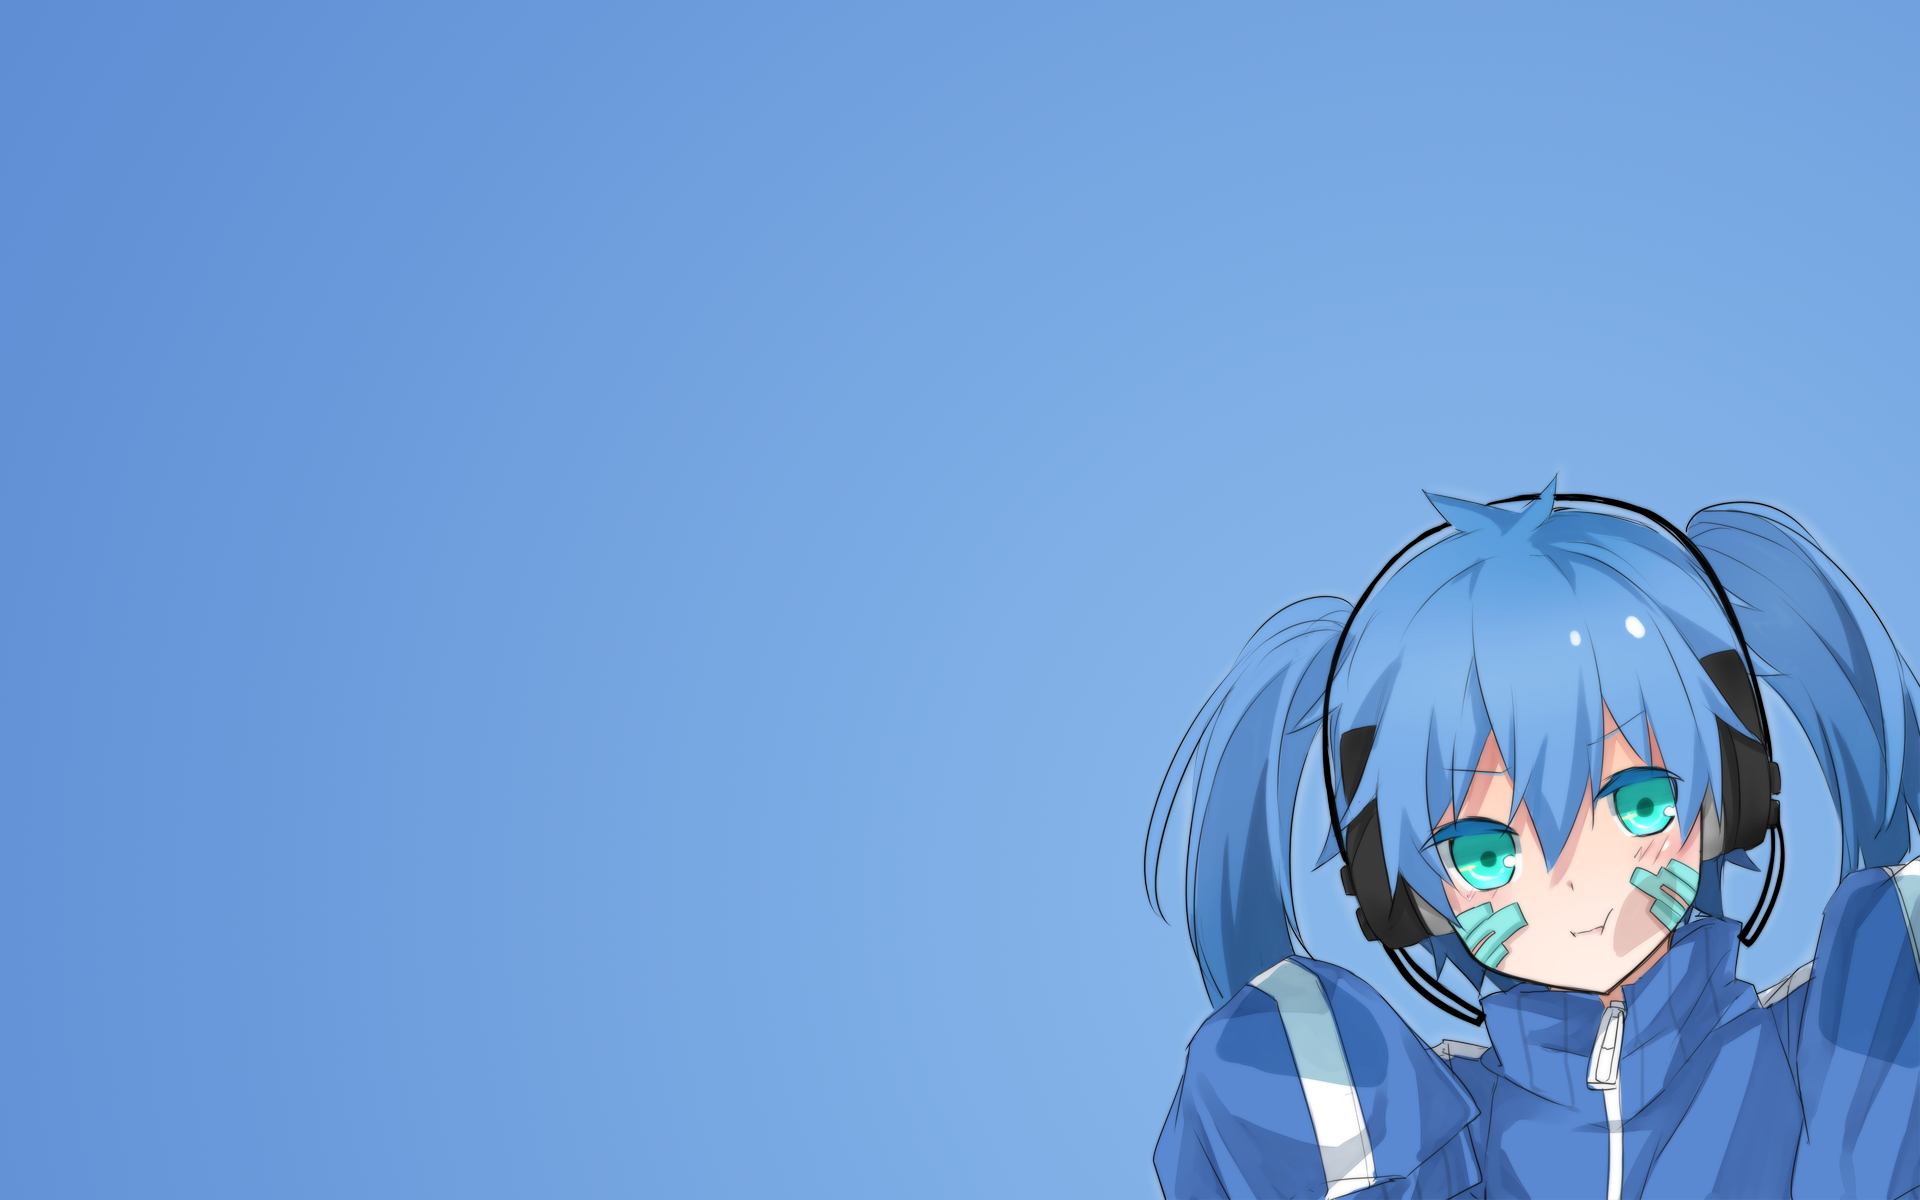 Вокалоид на голубом фоне, Kagerou Project аниме